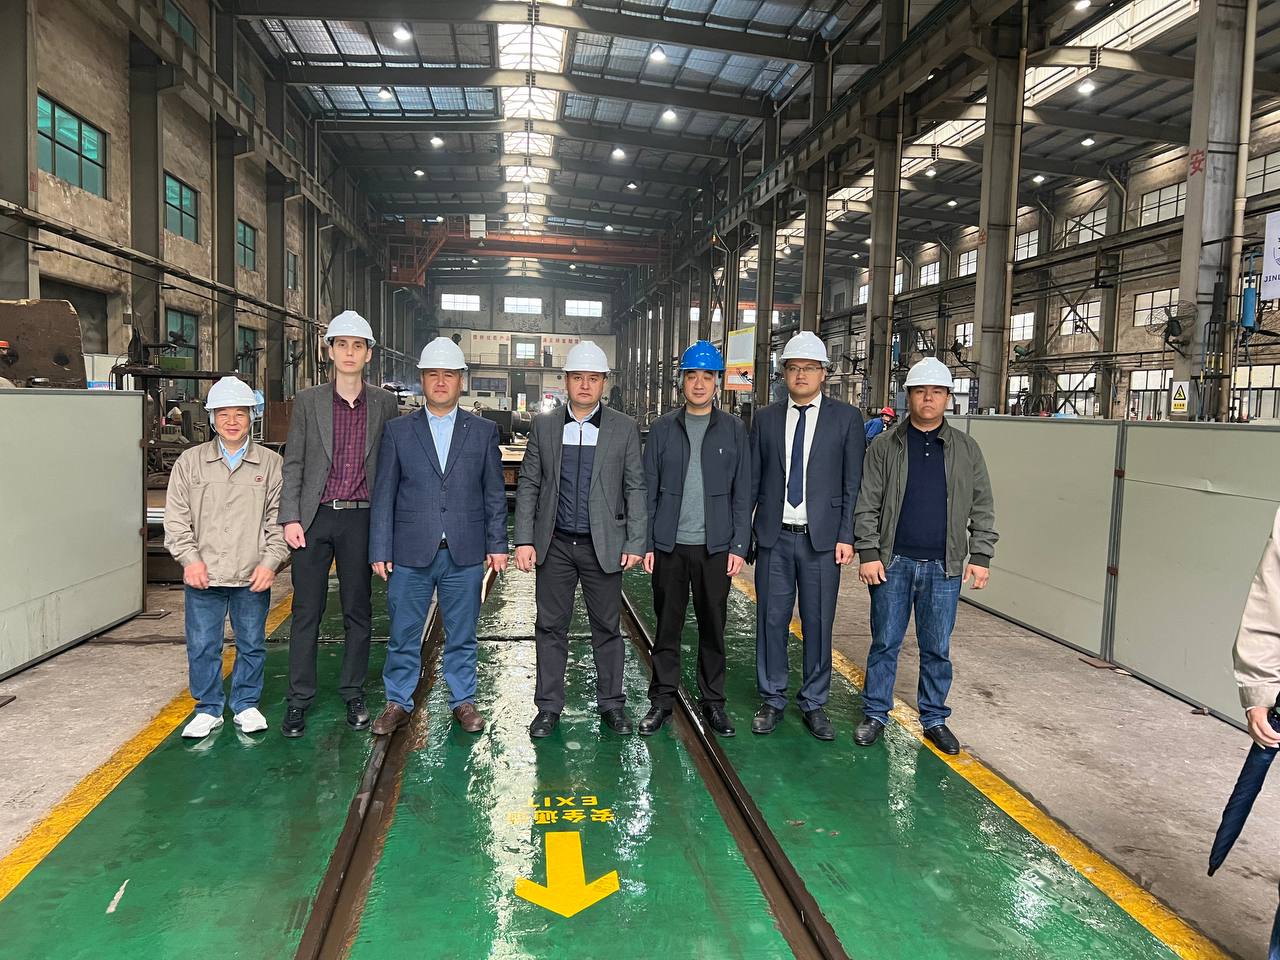 Делегация представителей гидроэнергетики посетила предприятие "Zhejiang Jinlun Electromechanic Co., Ltd."